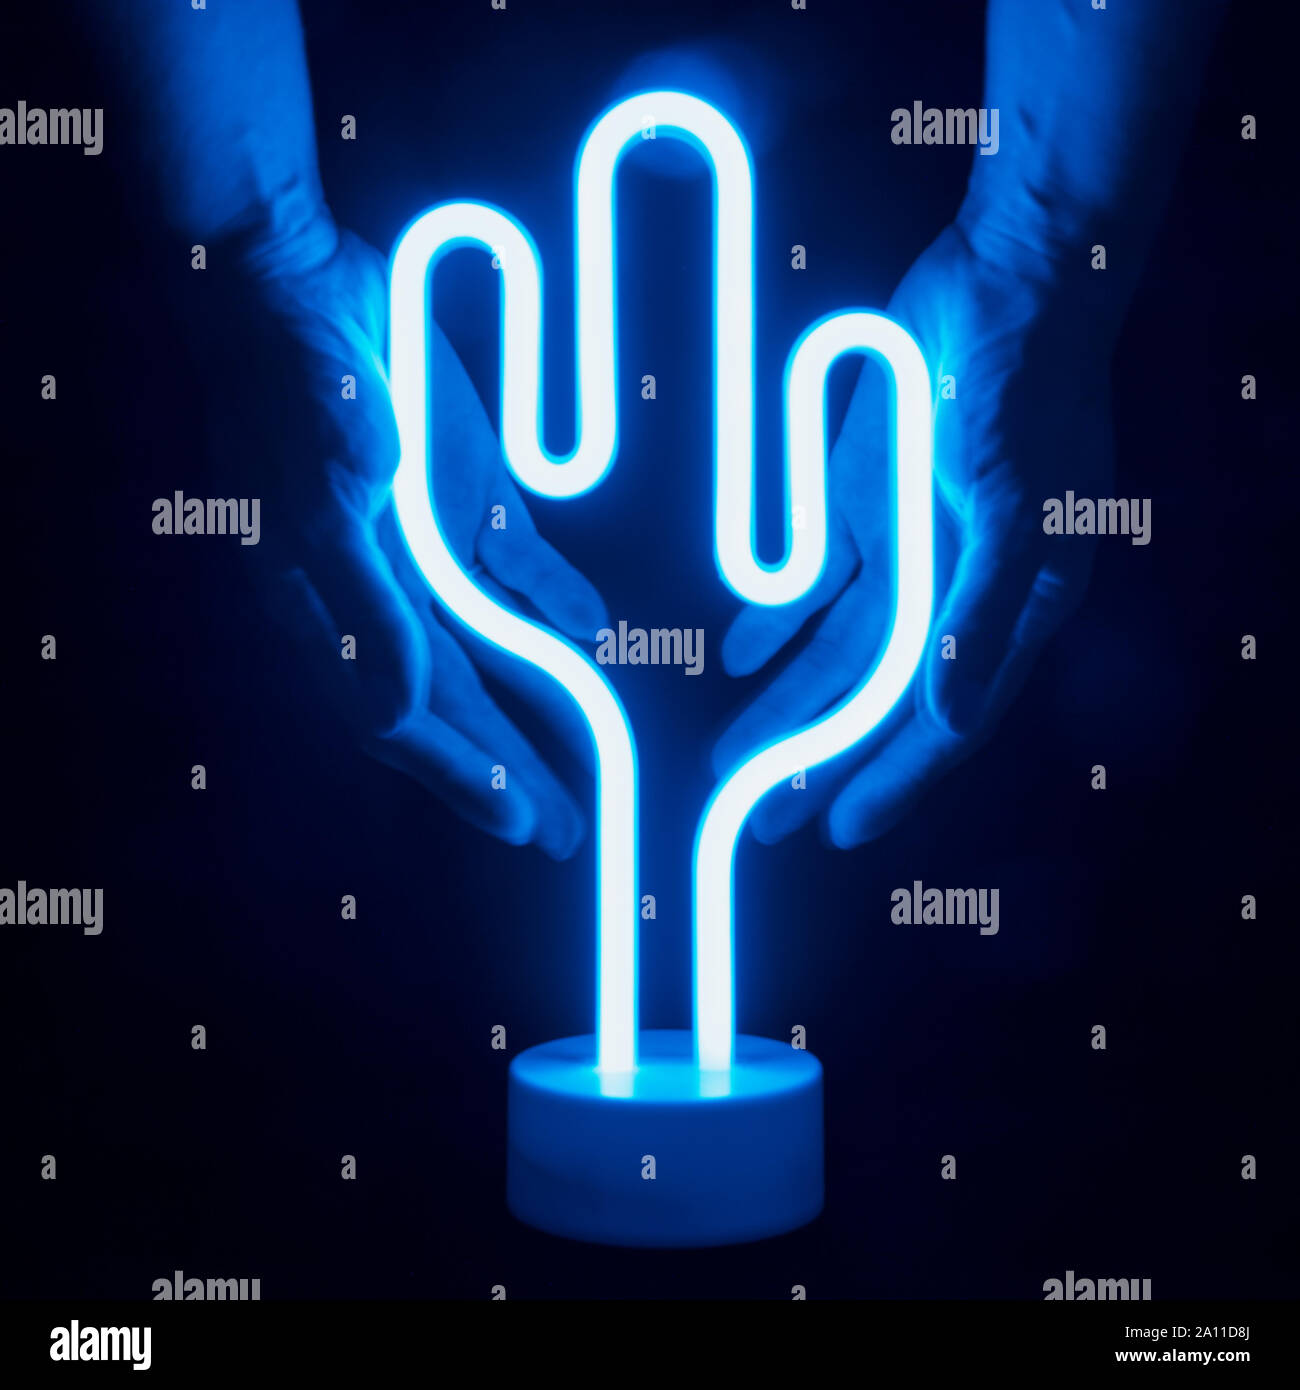 Neon Blau Kaktus LED Lampe in weibliche Hände auf schwarzem Hintergrund  Stockfotografie - Alamy